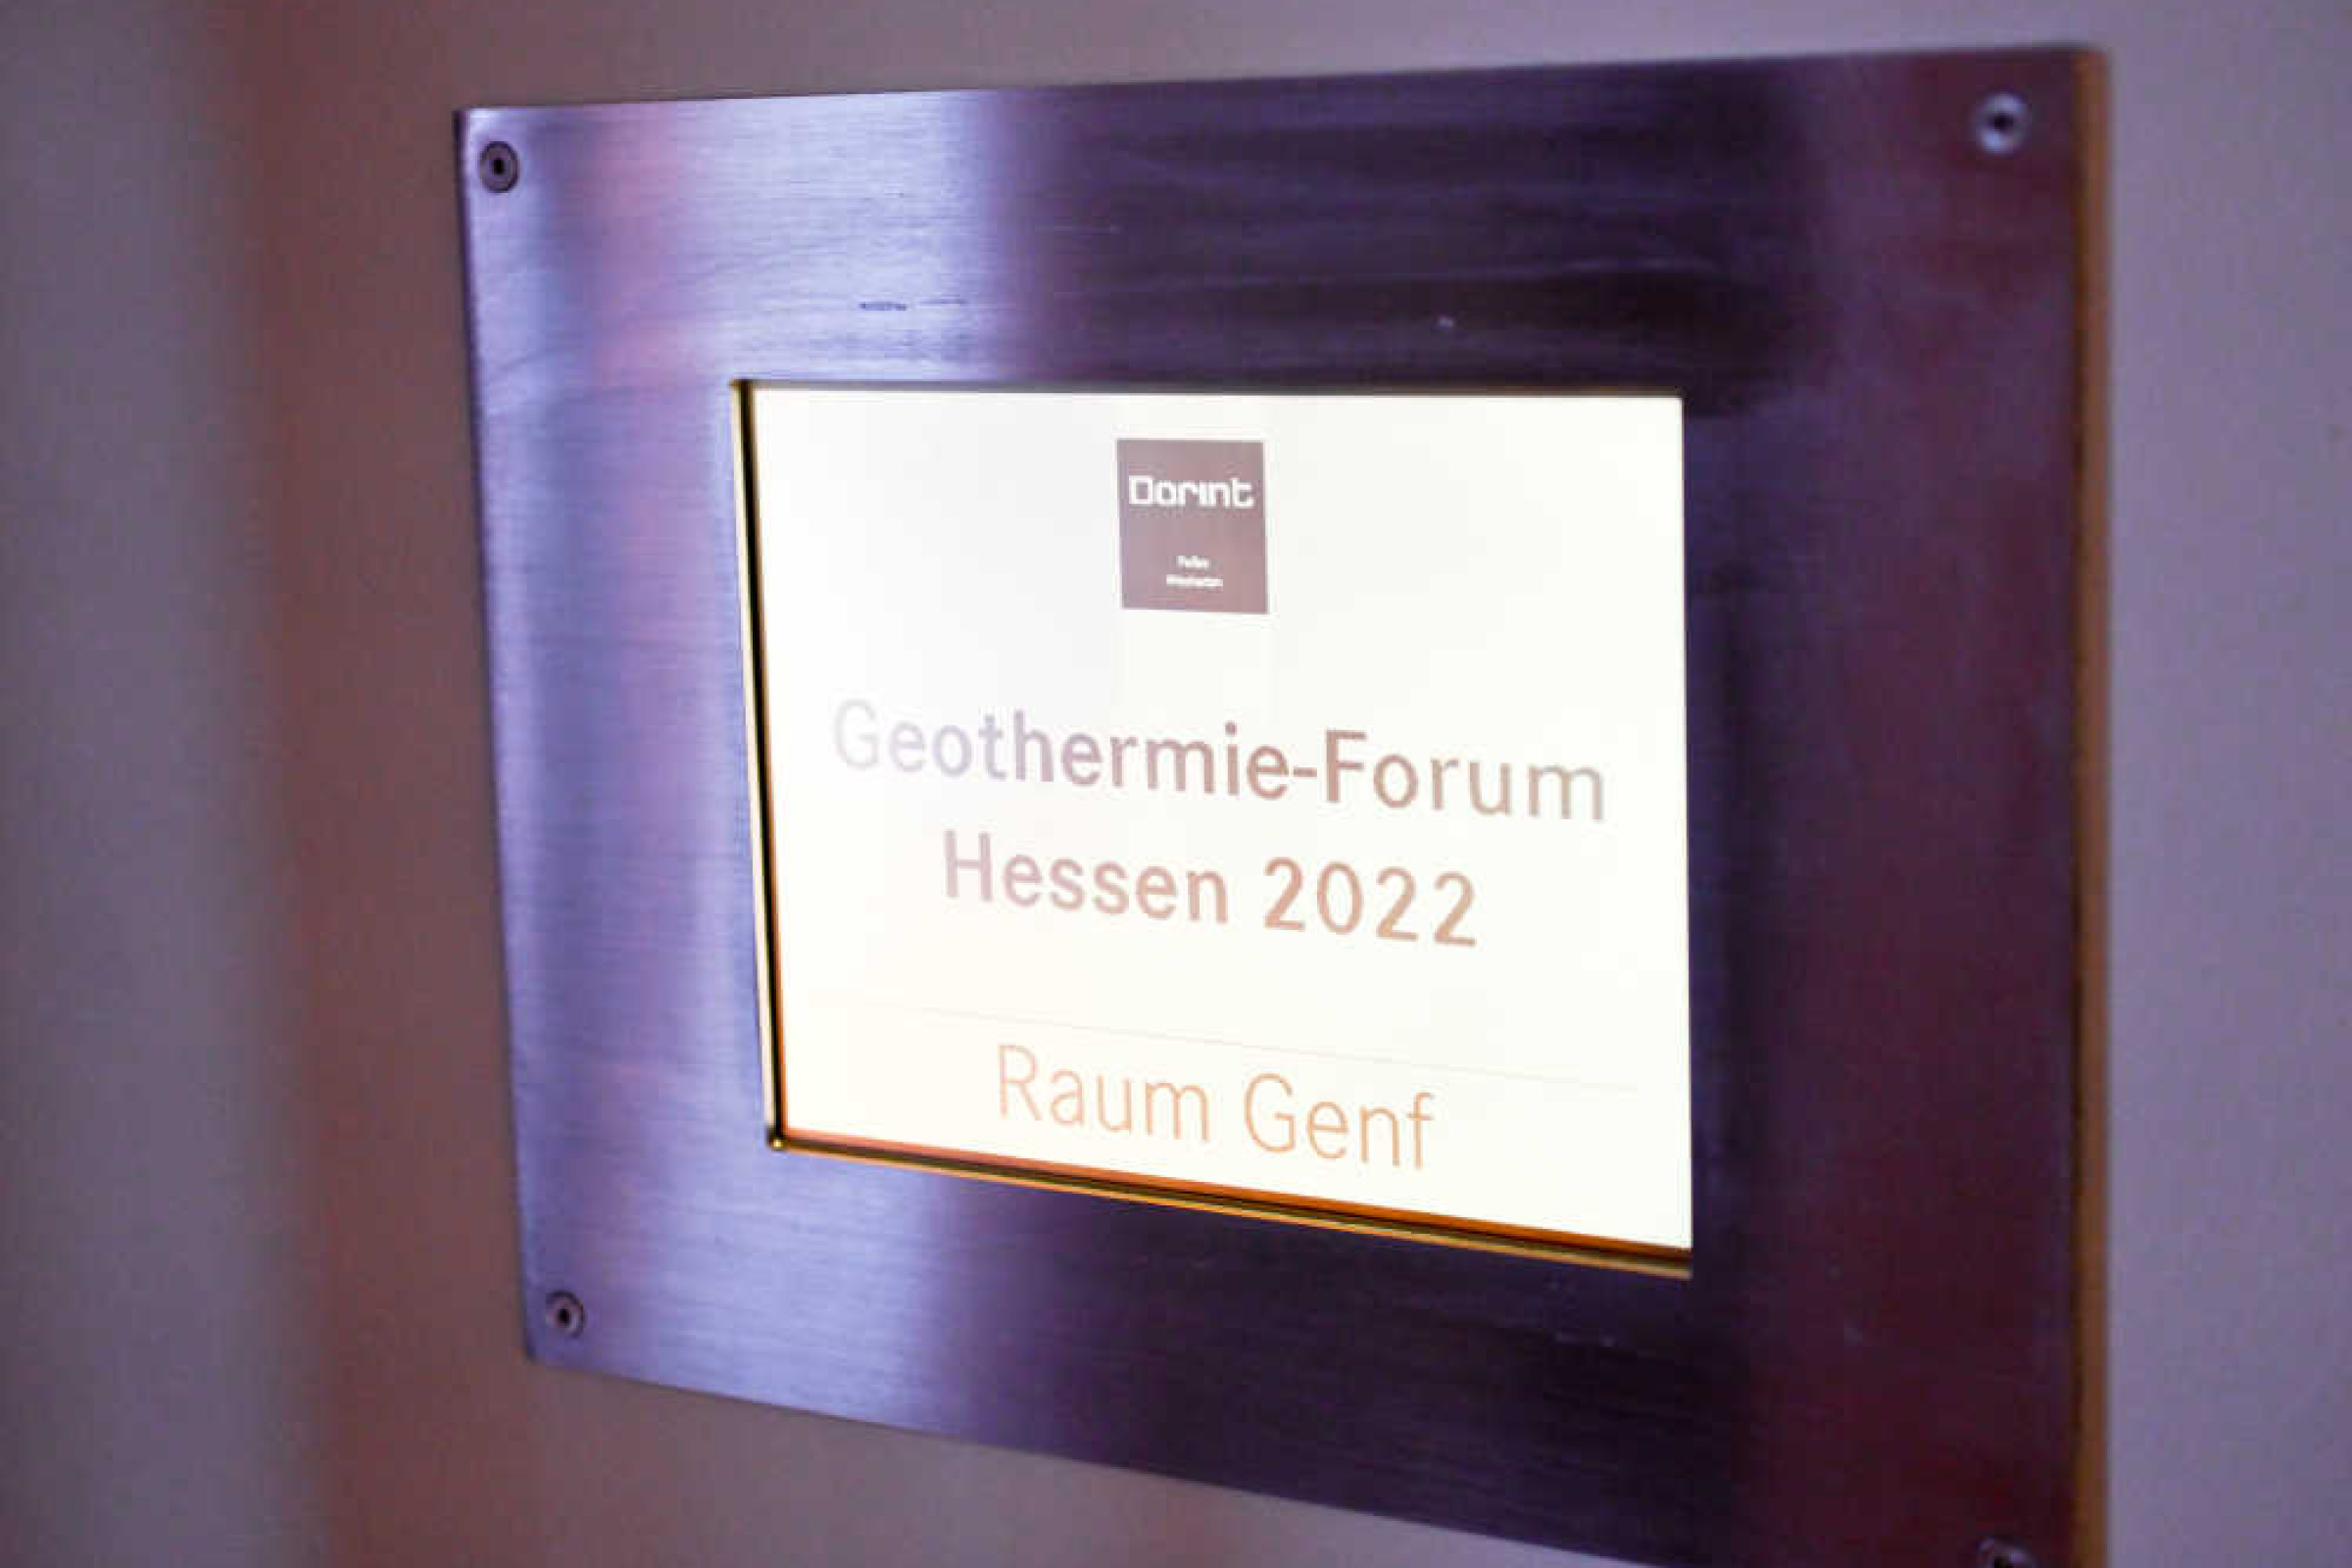 Schild mit dunklem Rahmen, Aufschrift: "Dorint – Geothermie-Forum Hessen 2022, Raum Genf"